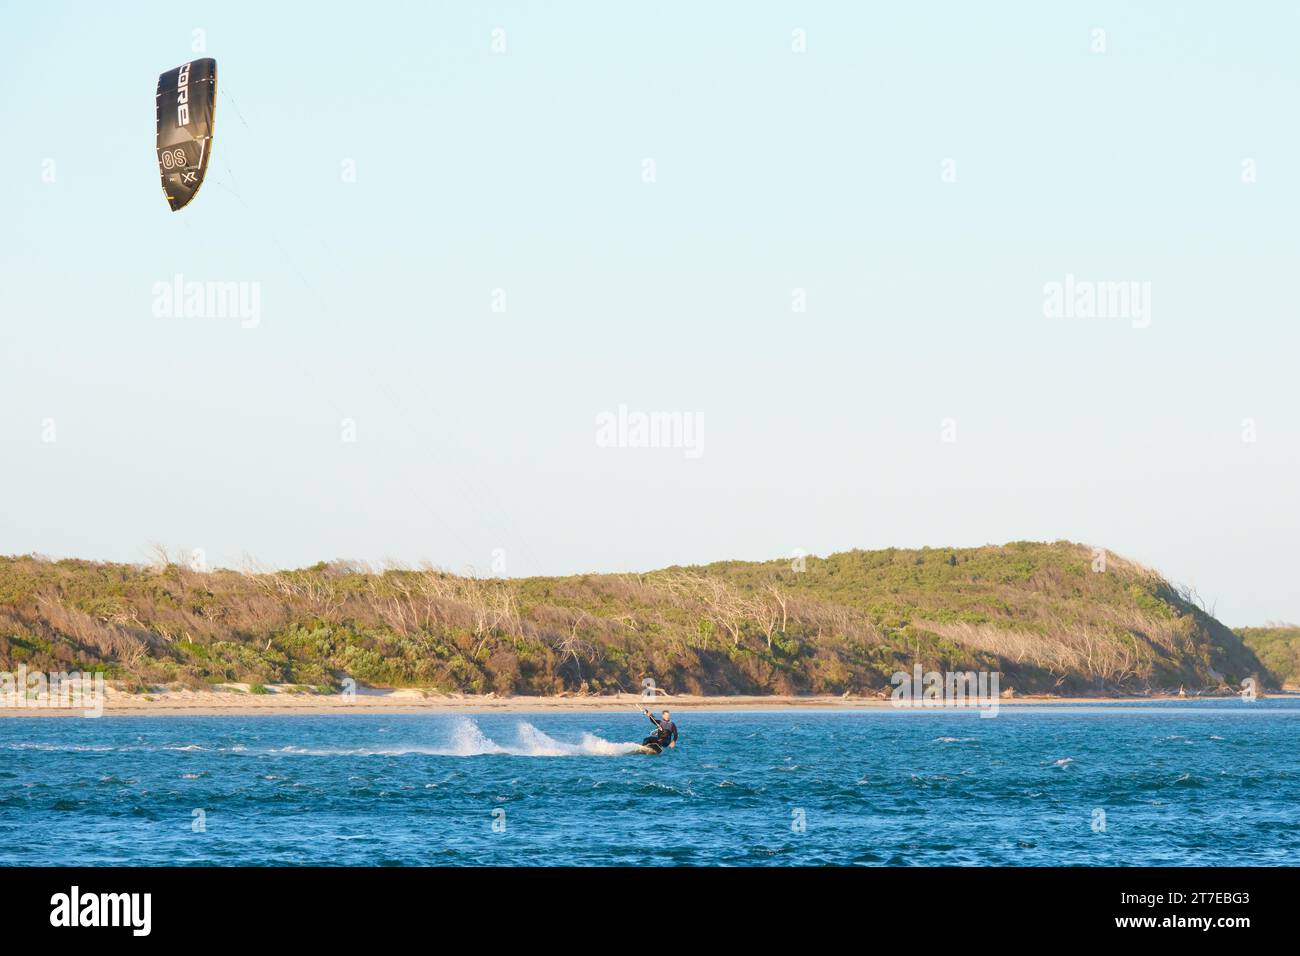 Ein Kitesurfer in Aktion beim Kitesurfen an der Mündung des Blackwood River in Hardy Inlet, Augusta, Südwest-Australien. Stockfoto